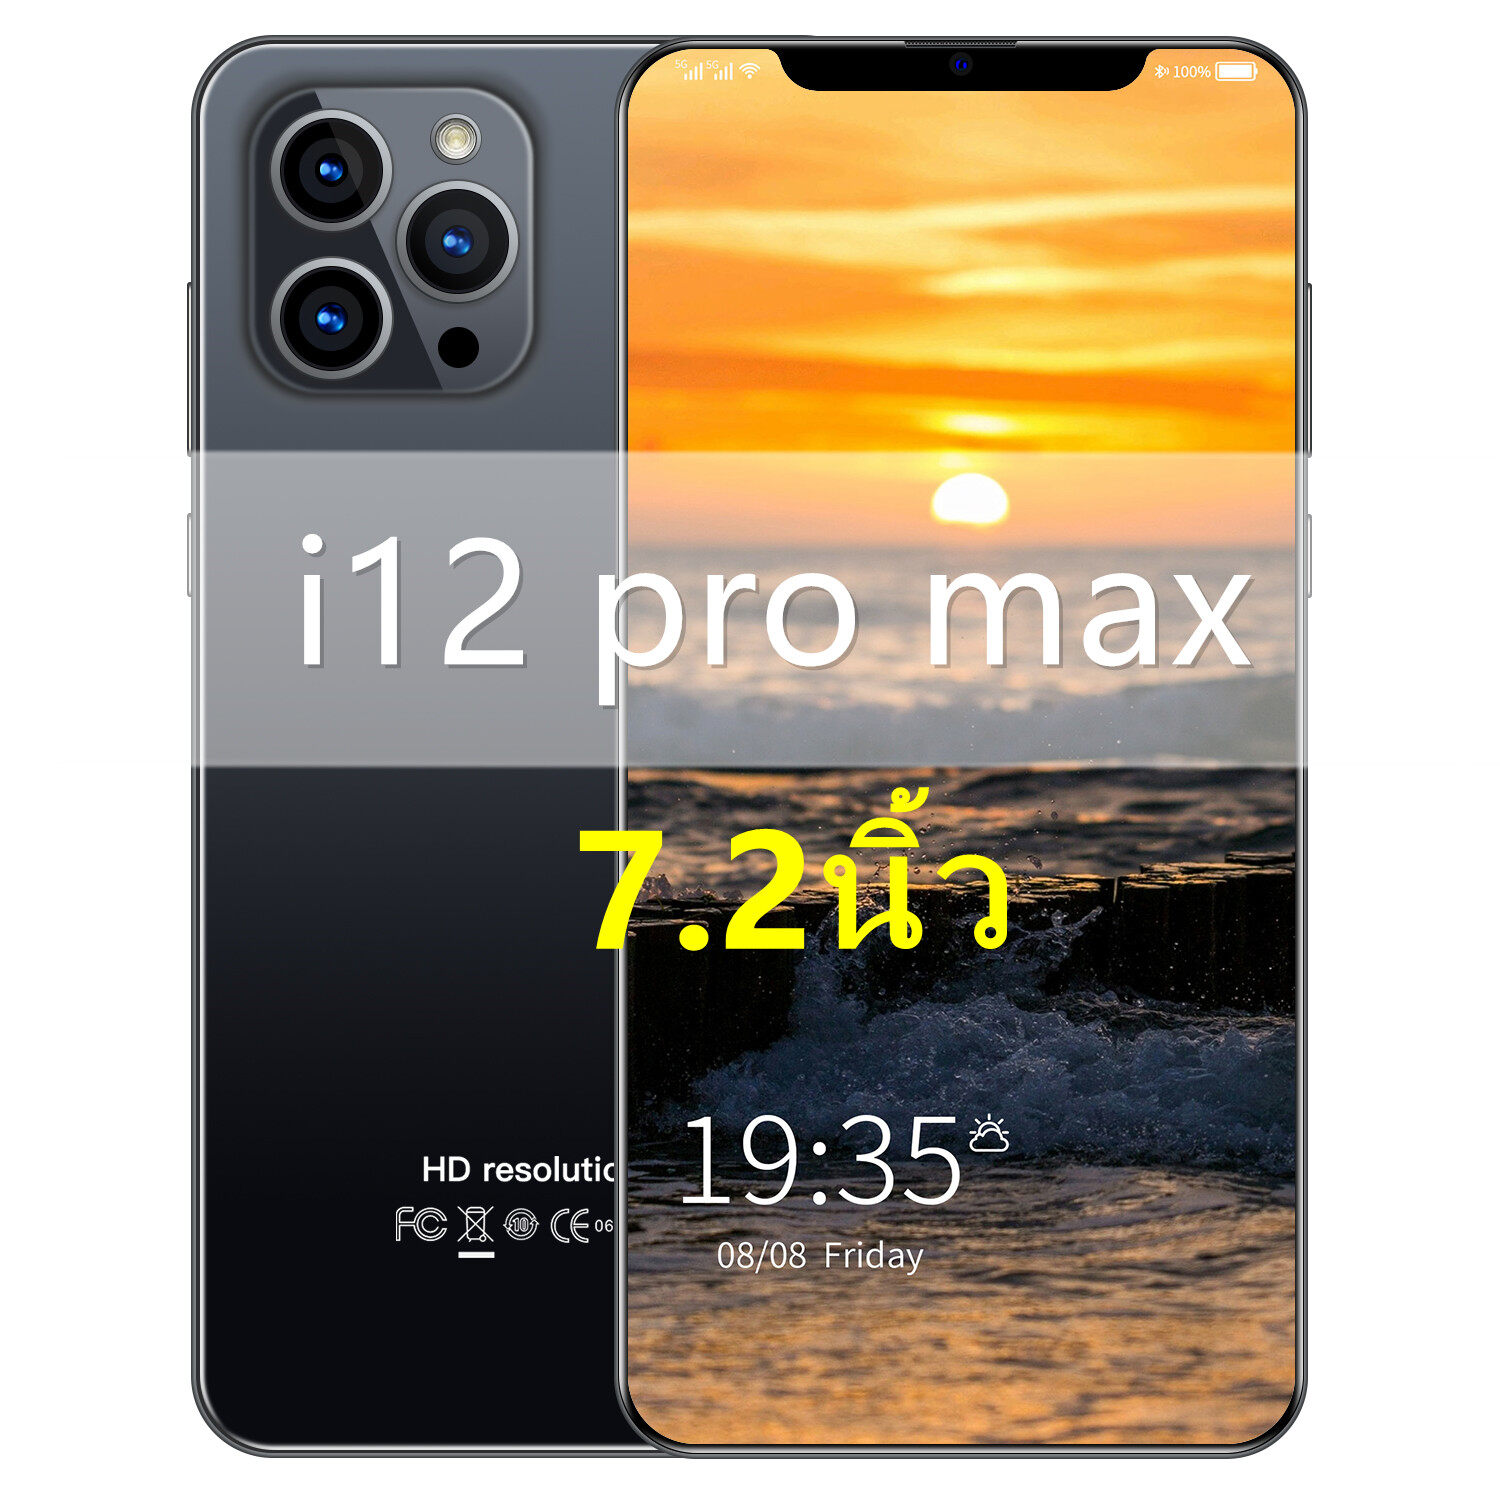 โทรศัพท์มือถือ i12 Pro max มือถือราคาถูก 12G+512G โทรศัพท์ราคาถูก จอ 7.2นิ้ว  ถ่ายภาพ ชมภาพยนต์ เกม แอปธนาคาร smartphone  โทรศัพท์มือถือ2 โทรศัพท์ถูกๆ